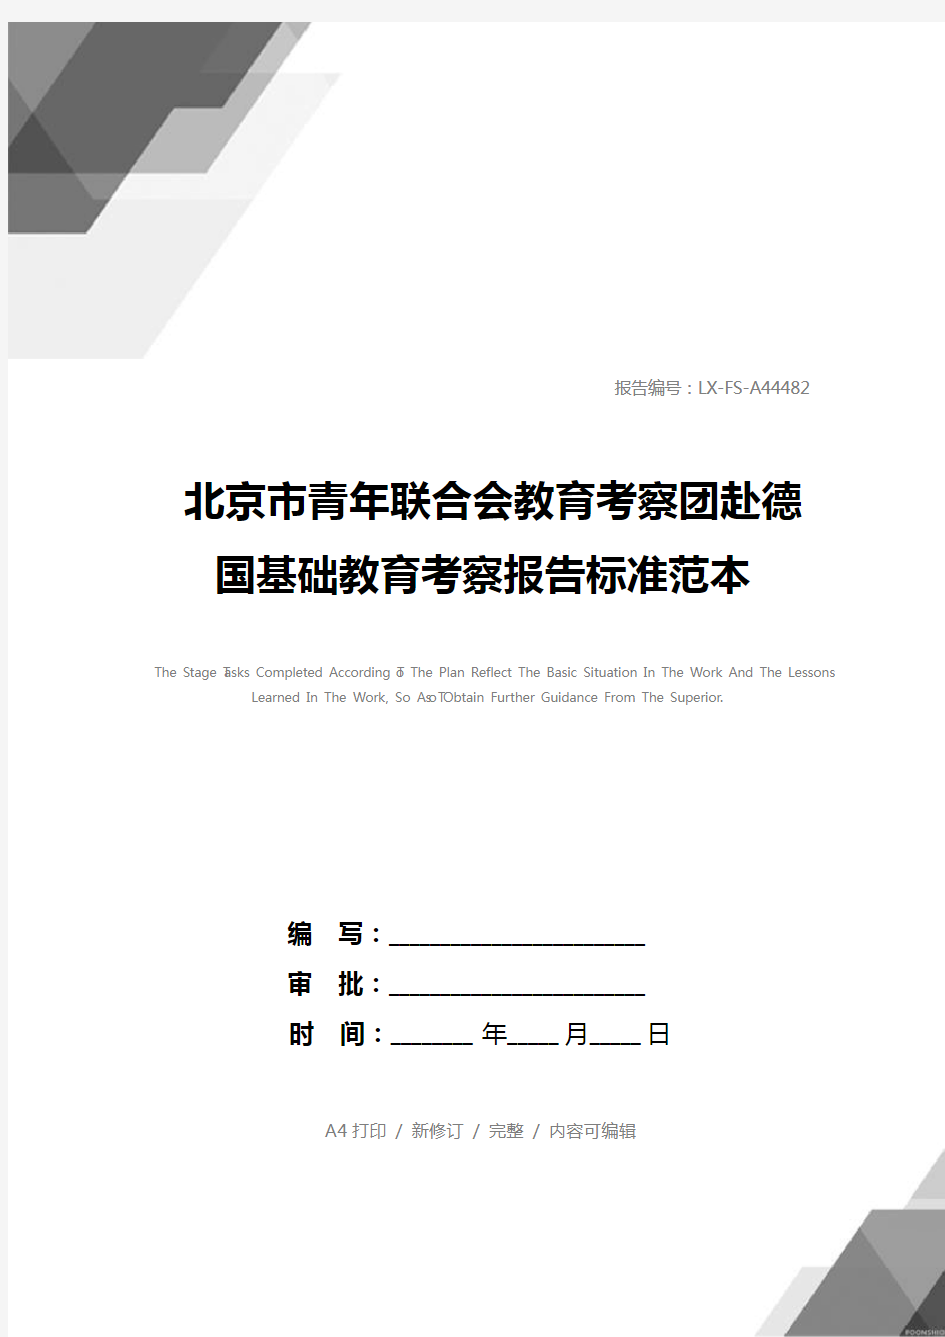 北京市青年联合会教育考察团赴德国基础教育考察报告标准范本